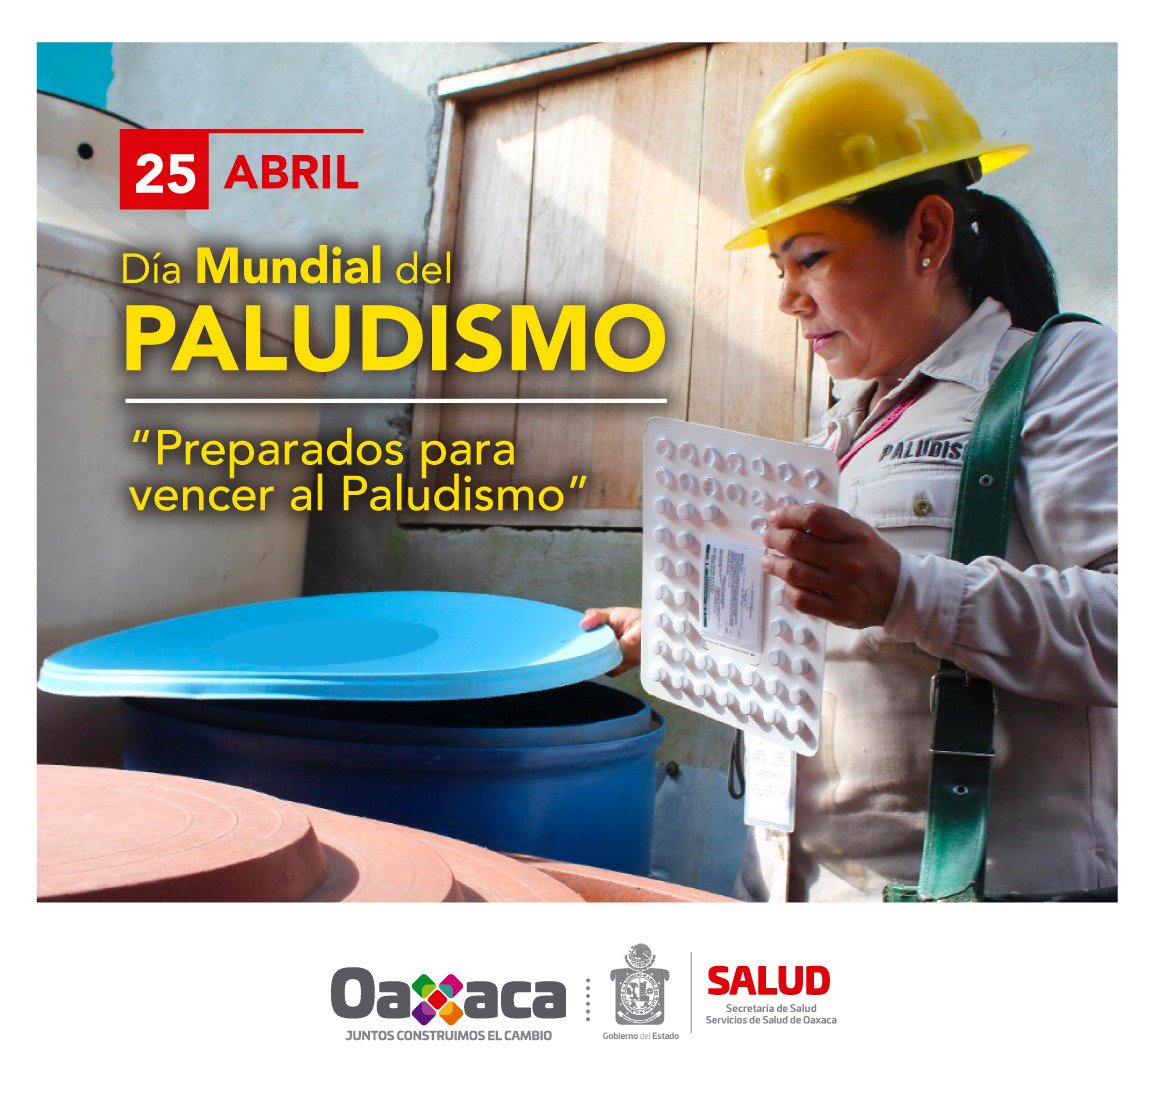 La insignia del ejército de “cascos amarillos” reza: sin descanso permanecemos luchando contra el paludismo; y prueba de ello es que en Oaxaca desde hace cinco años, a la fecha, no se ha registrado ningún solo caso de este padecimiento. #DiaMundialDelPaludismo